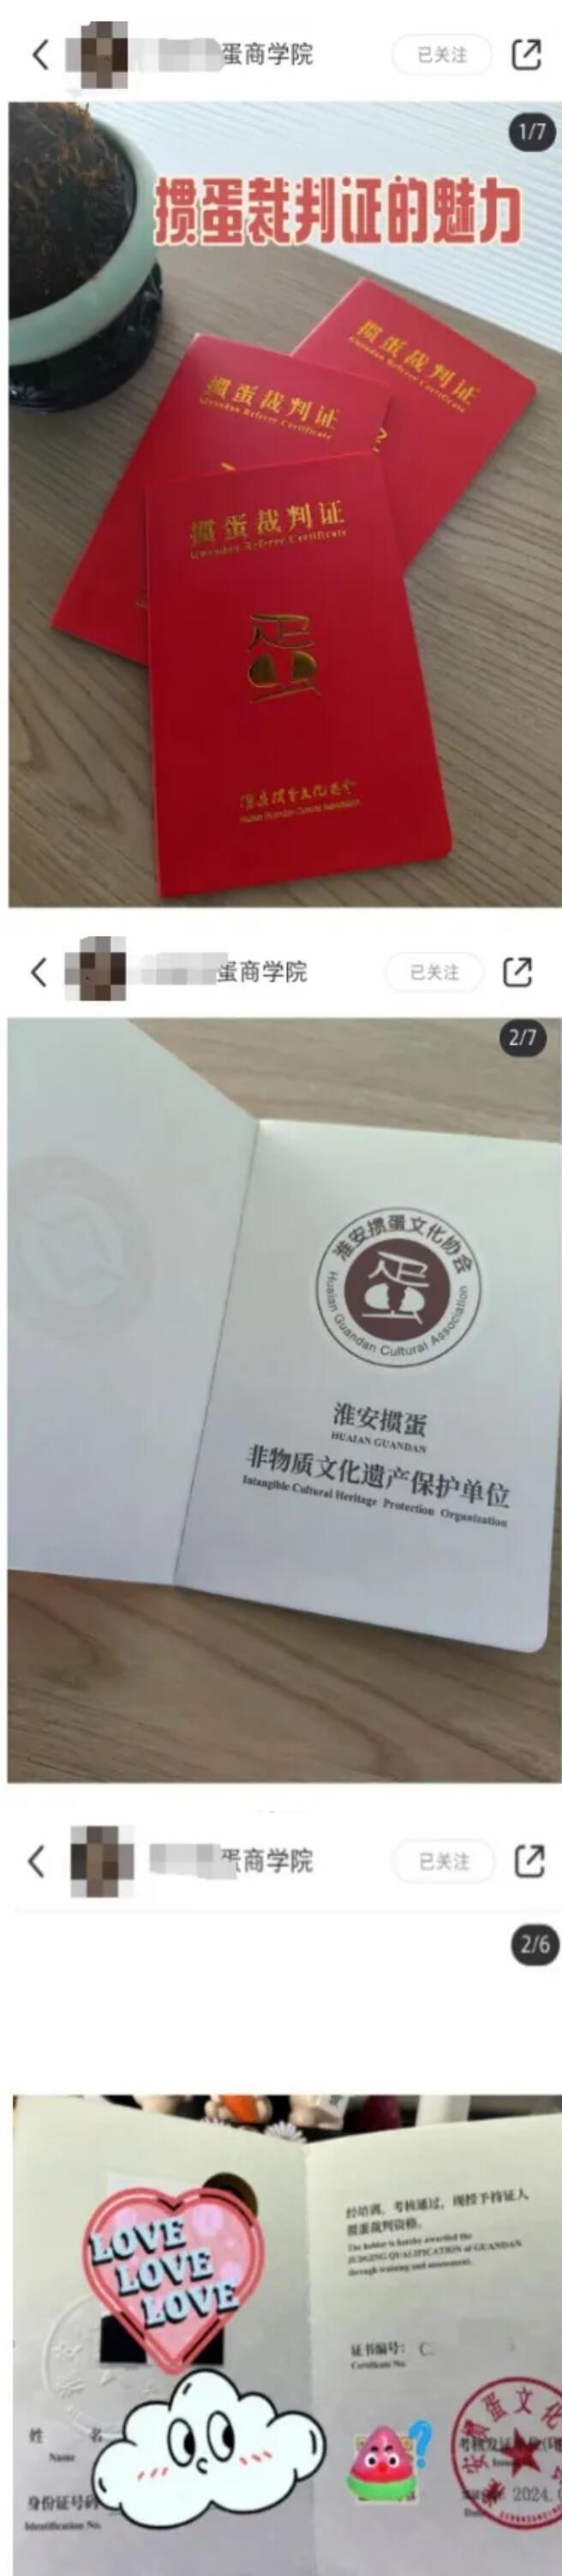 ▲李淮所在培训机构在小红书上分享的证书（截图）